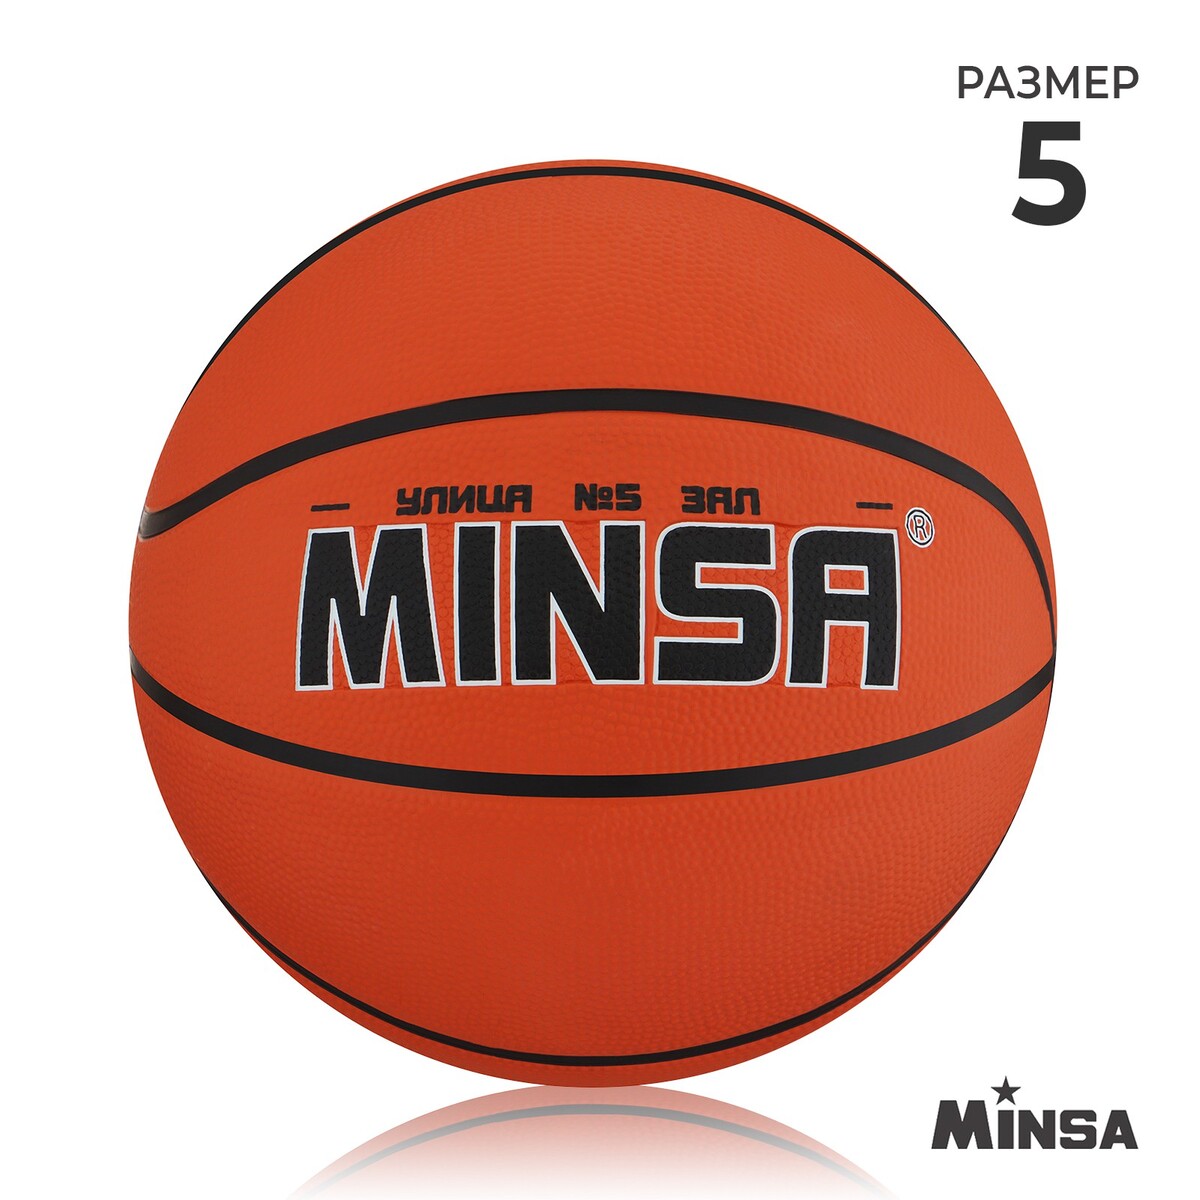 Мяч баскетбольный minsa, пвх, клееный, 8 панелей, р. 5 баскетбольный мяч minsa тренировочный pu клееный 8 панелей р 6